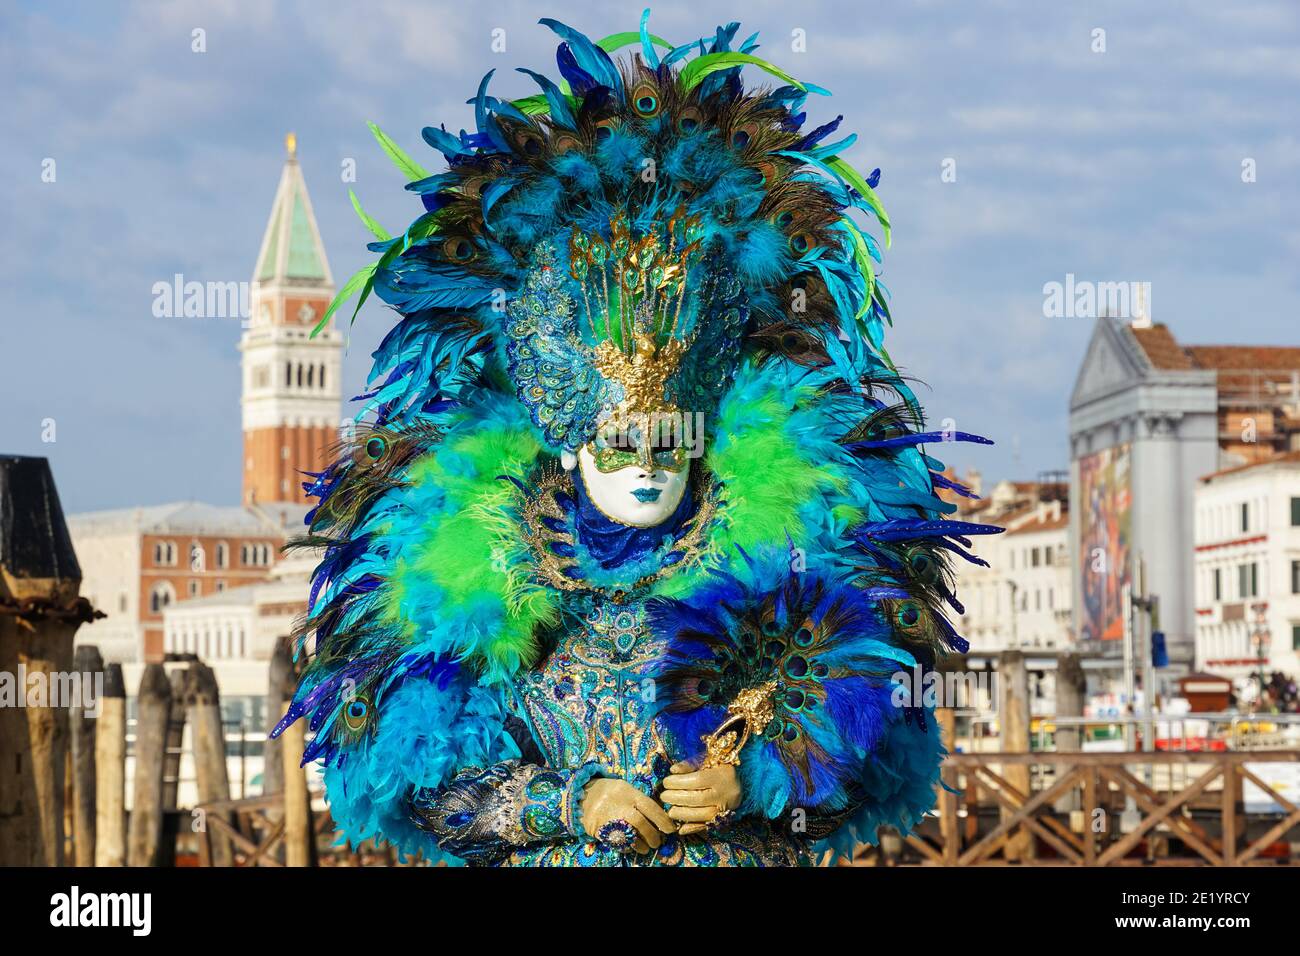 Frau gekleidet in traditionell dekoriertem Kostüm mit Federn und bemalter Maske während des Karnevals in Venedig mit dem Markusplatz Campanile hinter Venedig Italien Stockfoto